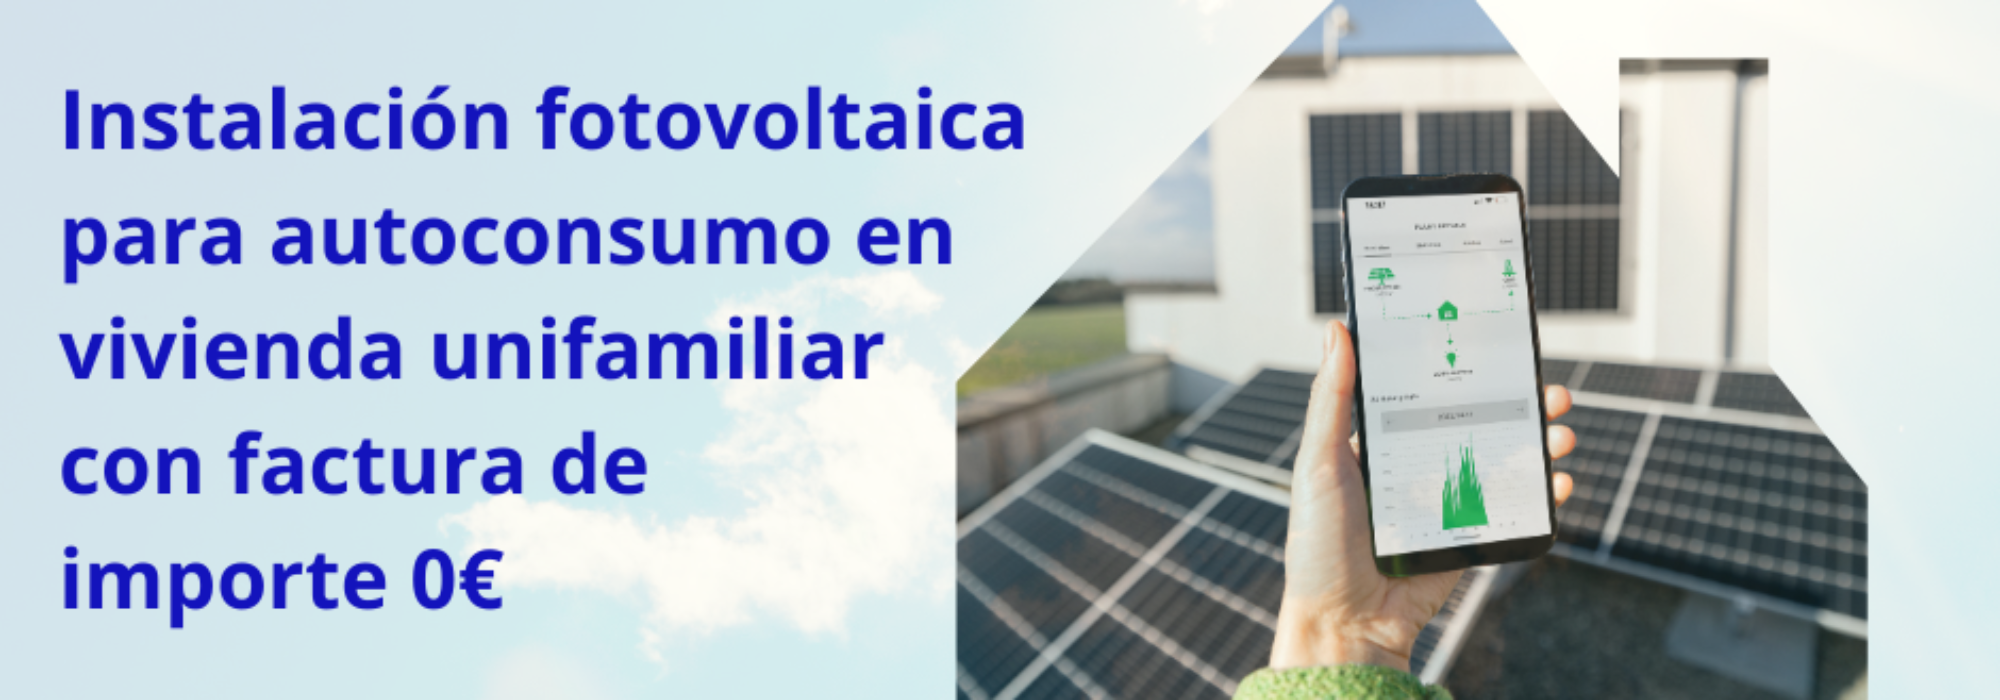 Instalación fotovoltaica para autoconsumo en vivienda unifamiliar con facturas de importe O€